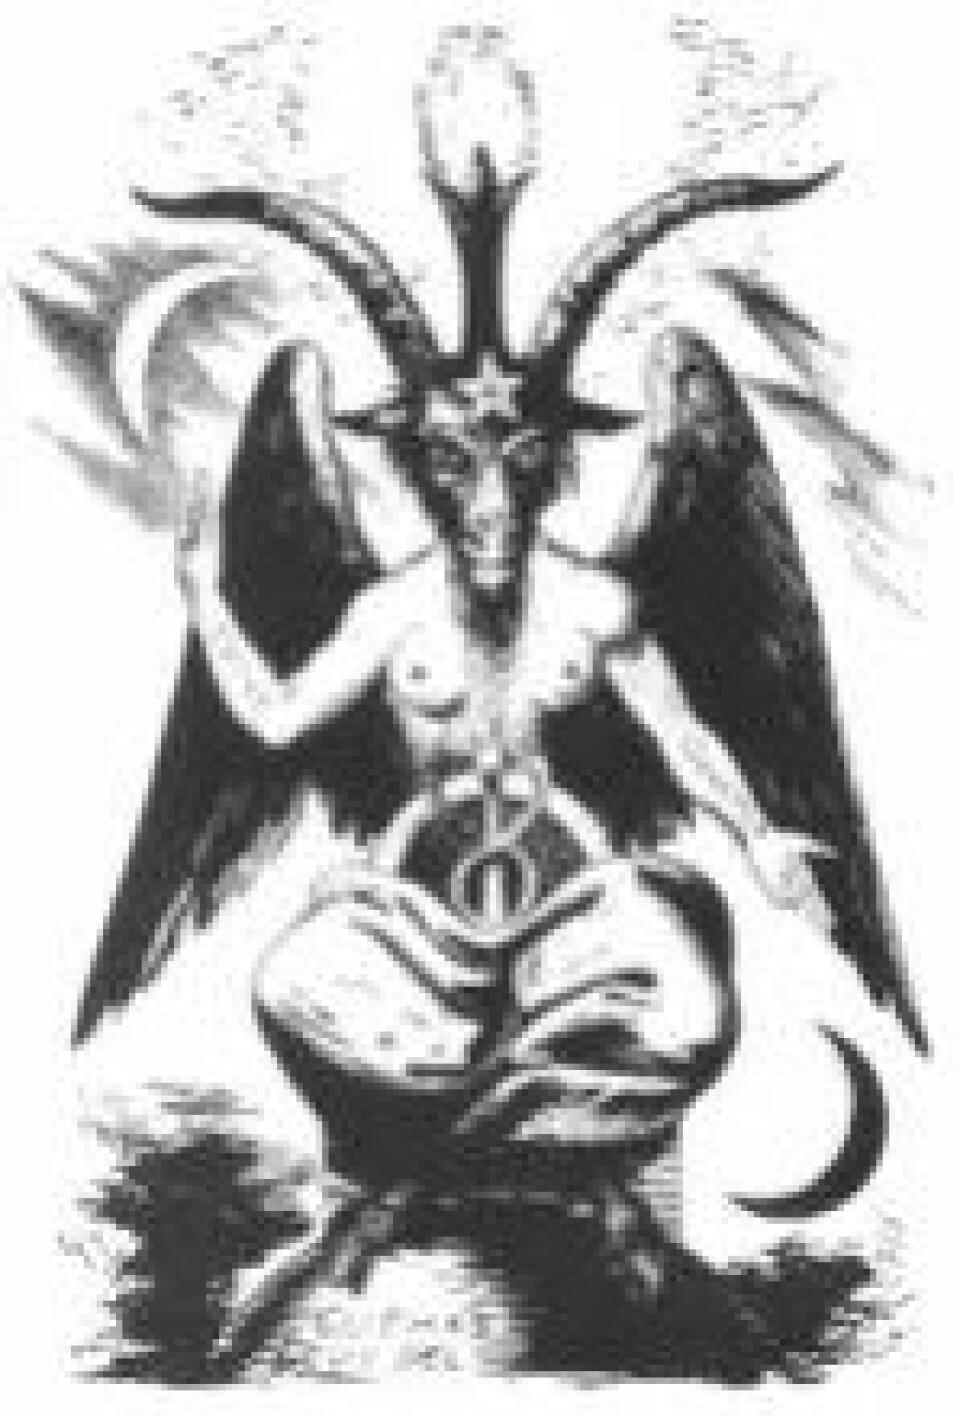 Det er sjelden satan og oftest satanisten på venstrehåndsveien som står i sentrum blant moderne satanister, skriver Aagaard Petersen. Her Eliphas Lévis bilde av Baphometen. (Kilde: Wikimedia commons)